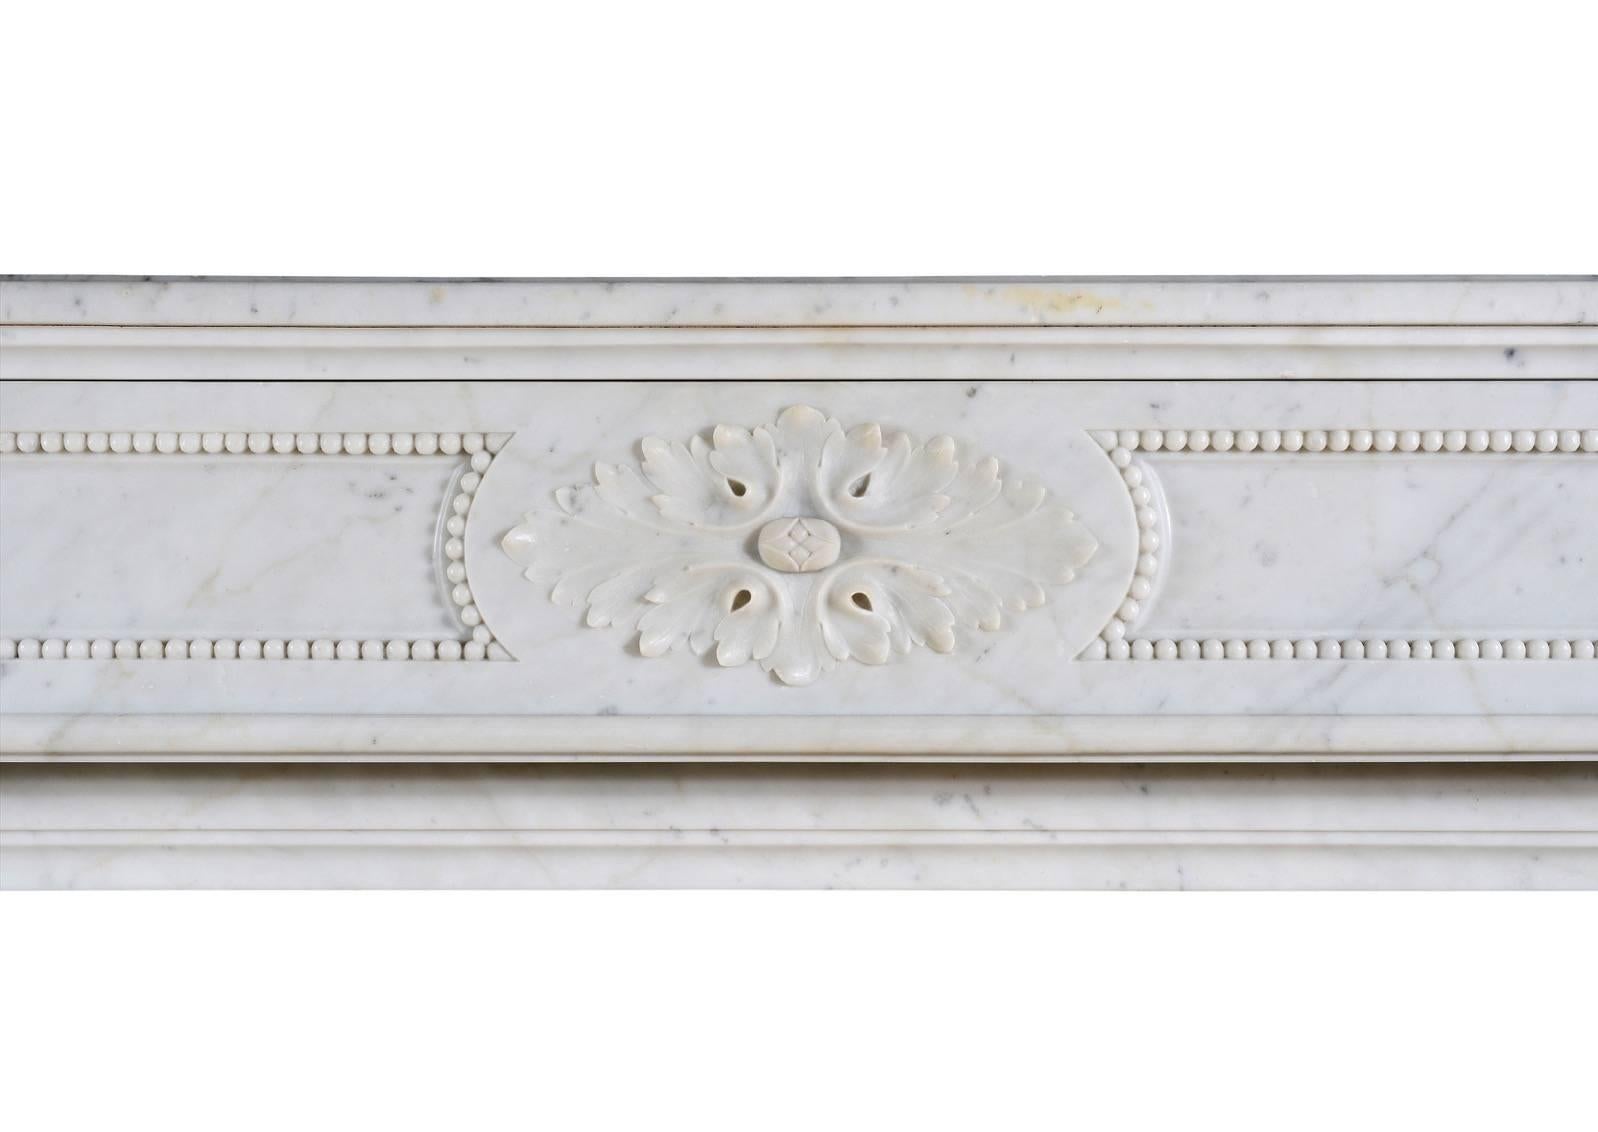 Ein hochwertiger französischer Kamin im Louis-XVI-Stil aus hellem Carrara-Marmor. Der geformte Fries mit geschnitzten ovalen Paterae in der Mitte und durchgängigen Wülsten. Die Pfosten mit geschnitzten Akanthusblättern und spiralförmiger